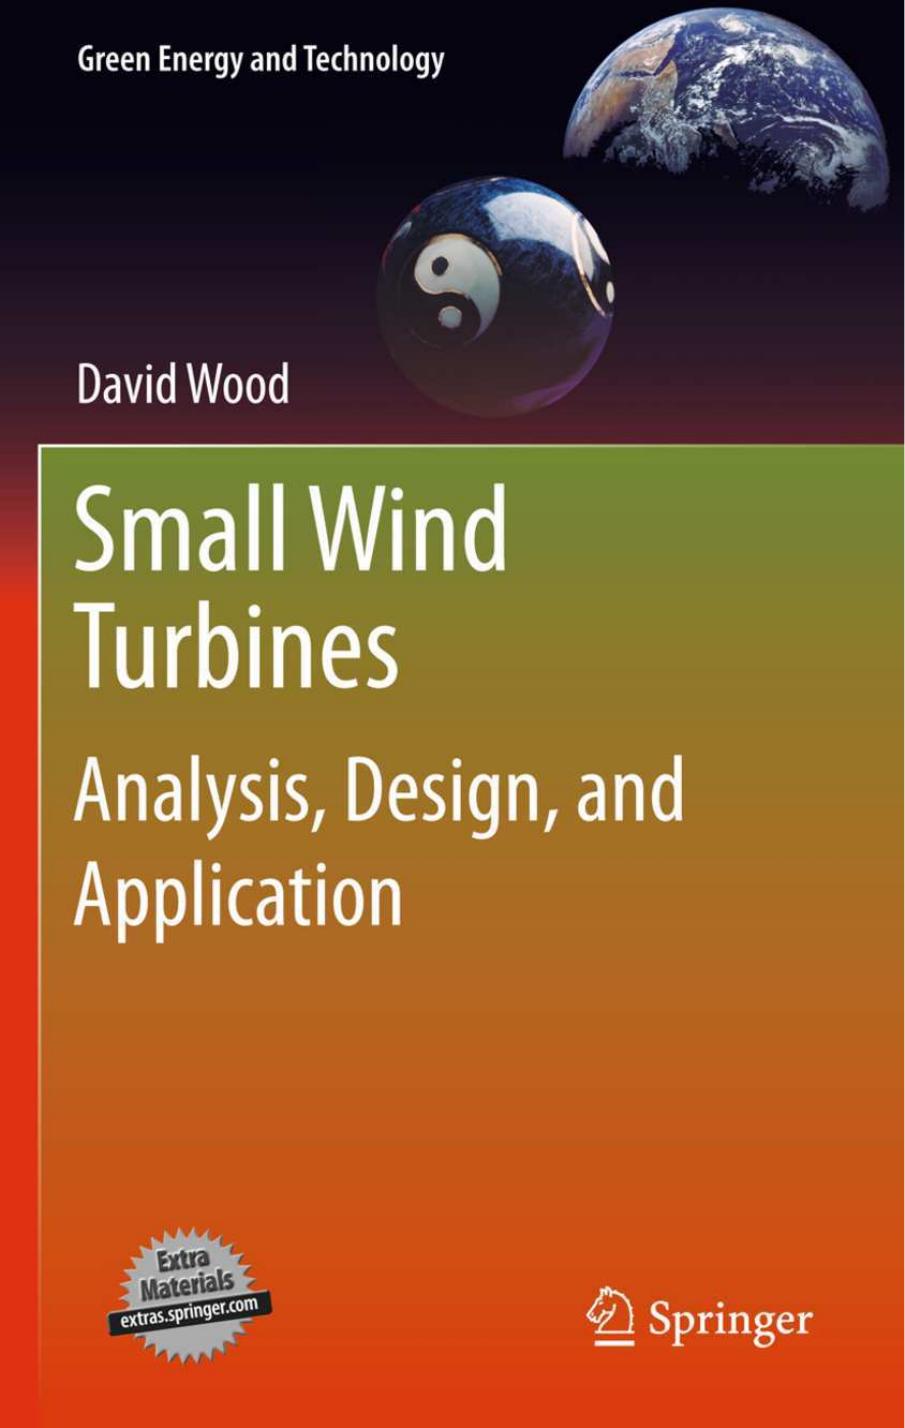 Small Wind Turbines by David Wood